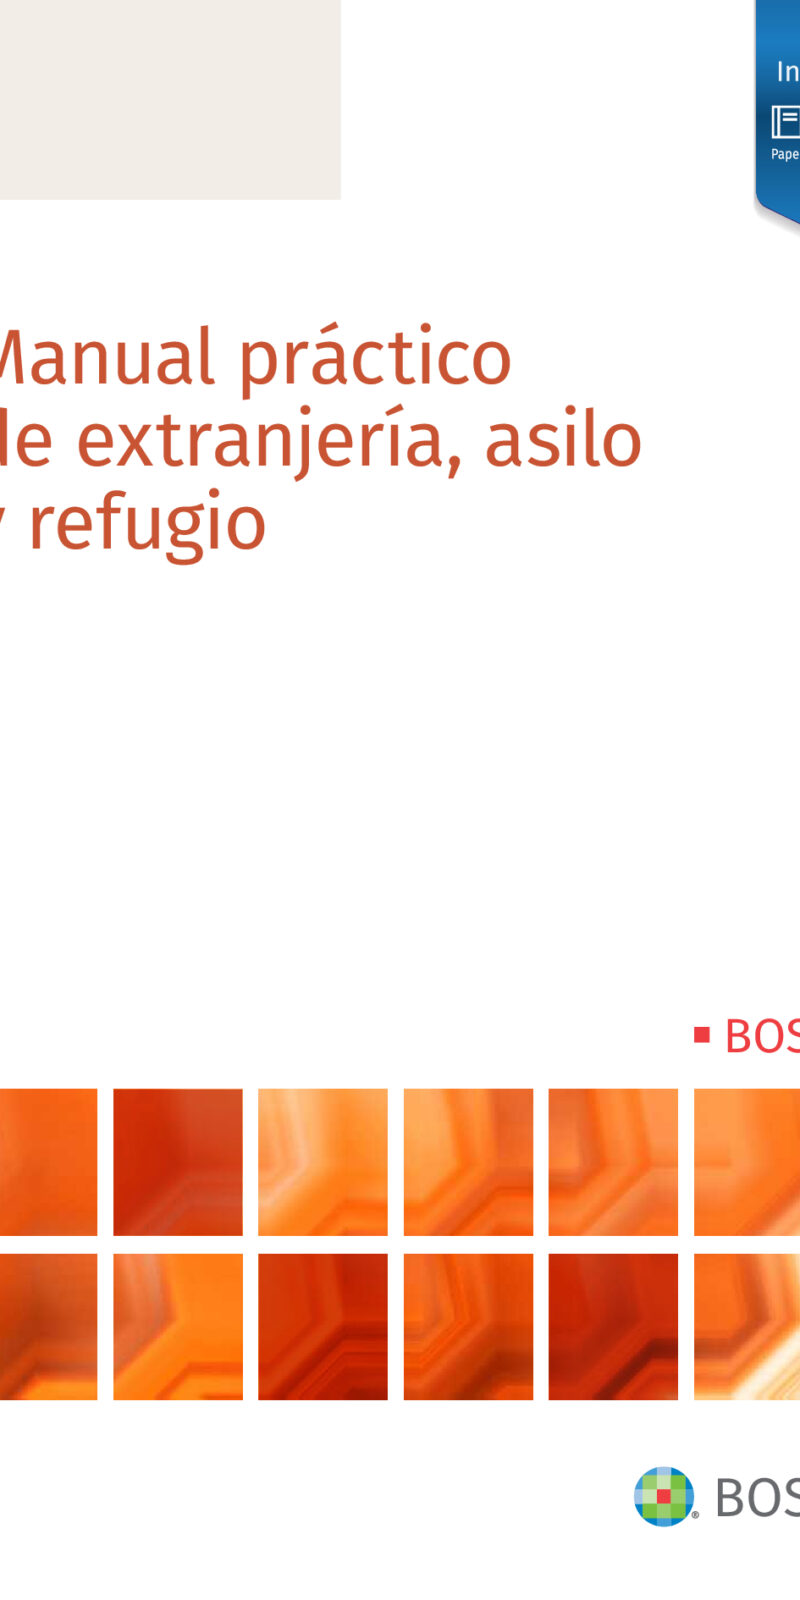 Manual práctico extranjería asilo y refugio-9788490906675